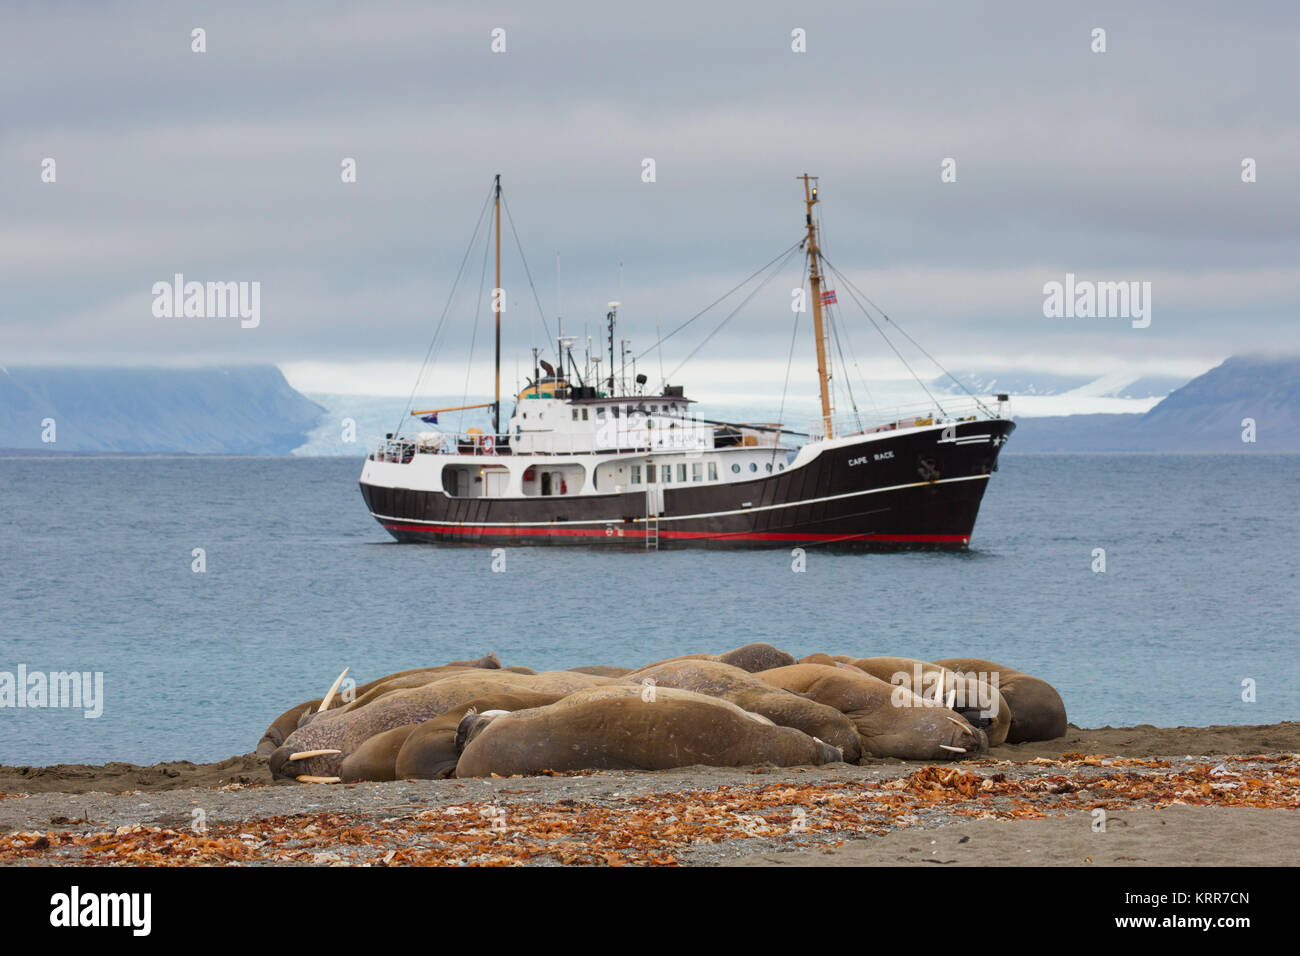 Group of walruses (Odobenus rosmarus) resting on beach at Phippsøya in Sjuøyane, archipelago north of Nordaustlandet, Svalbard, Norway Stock Photo